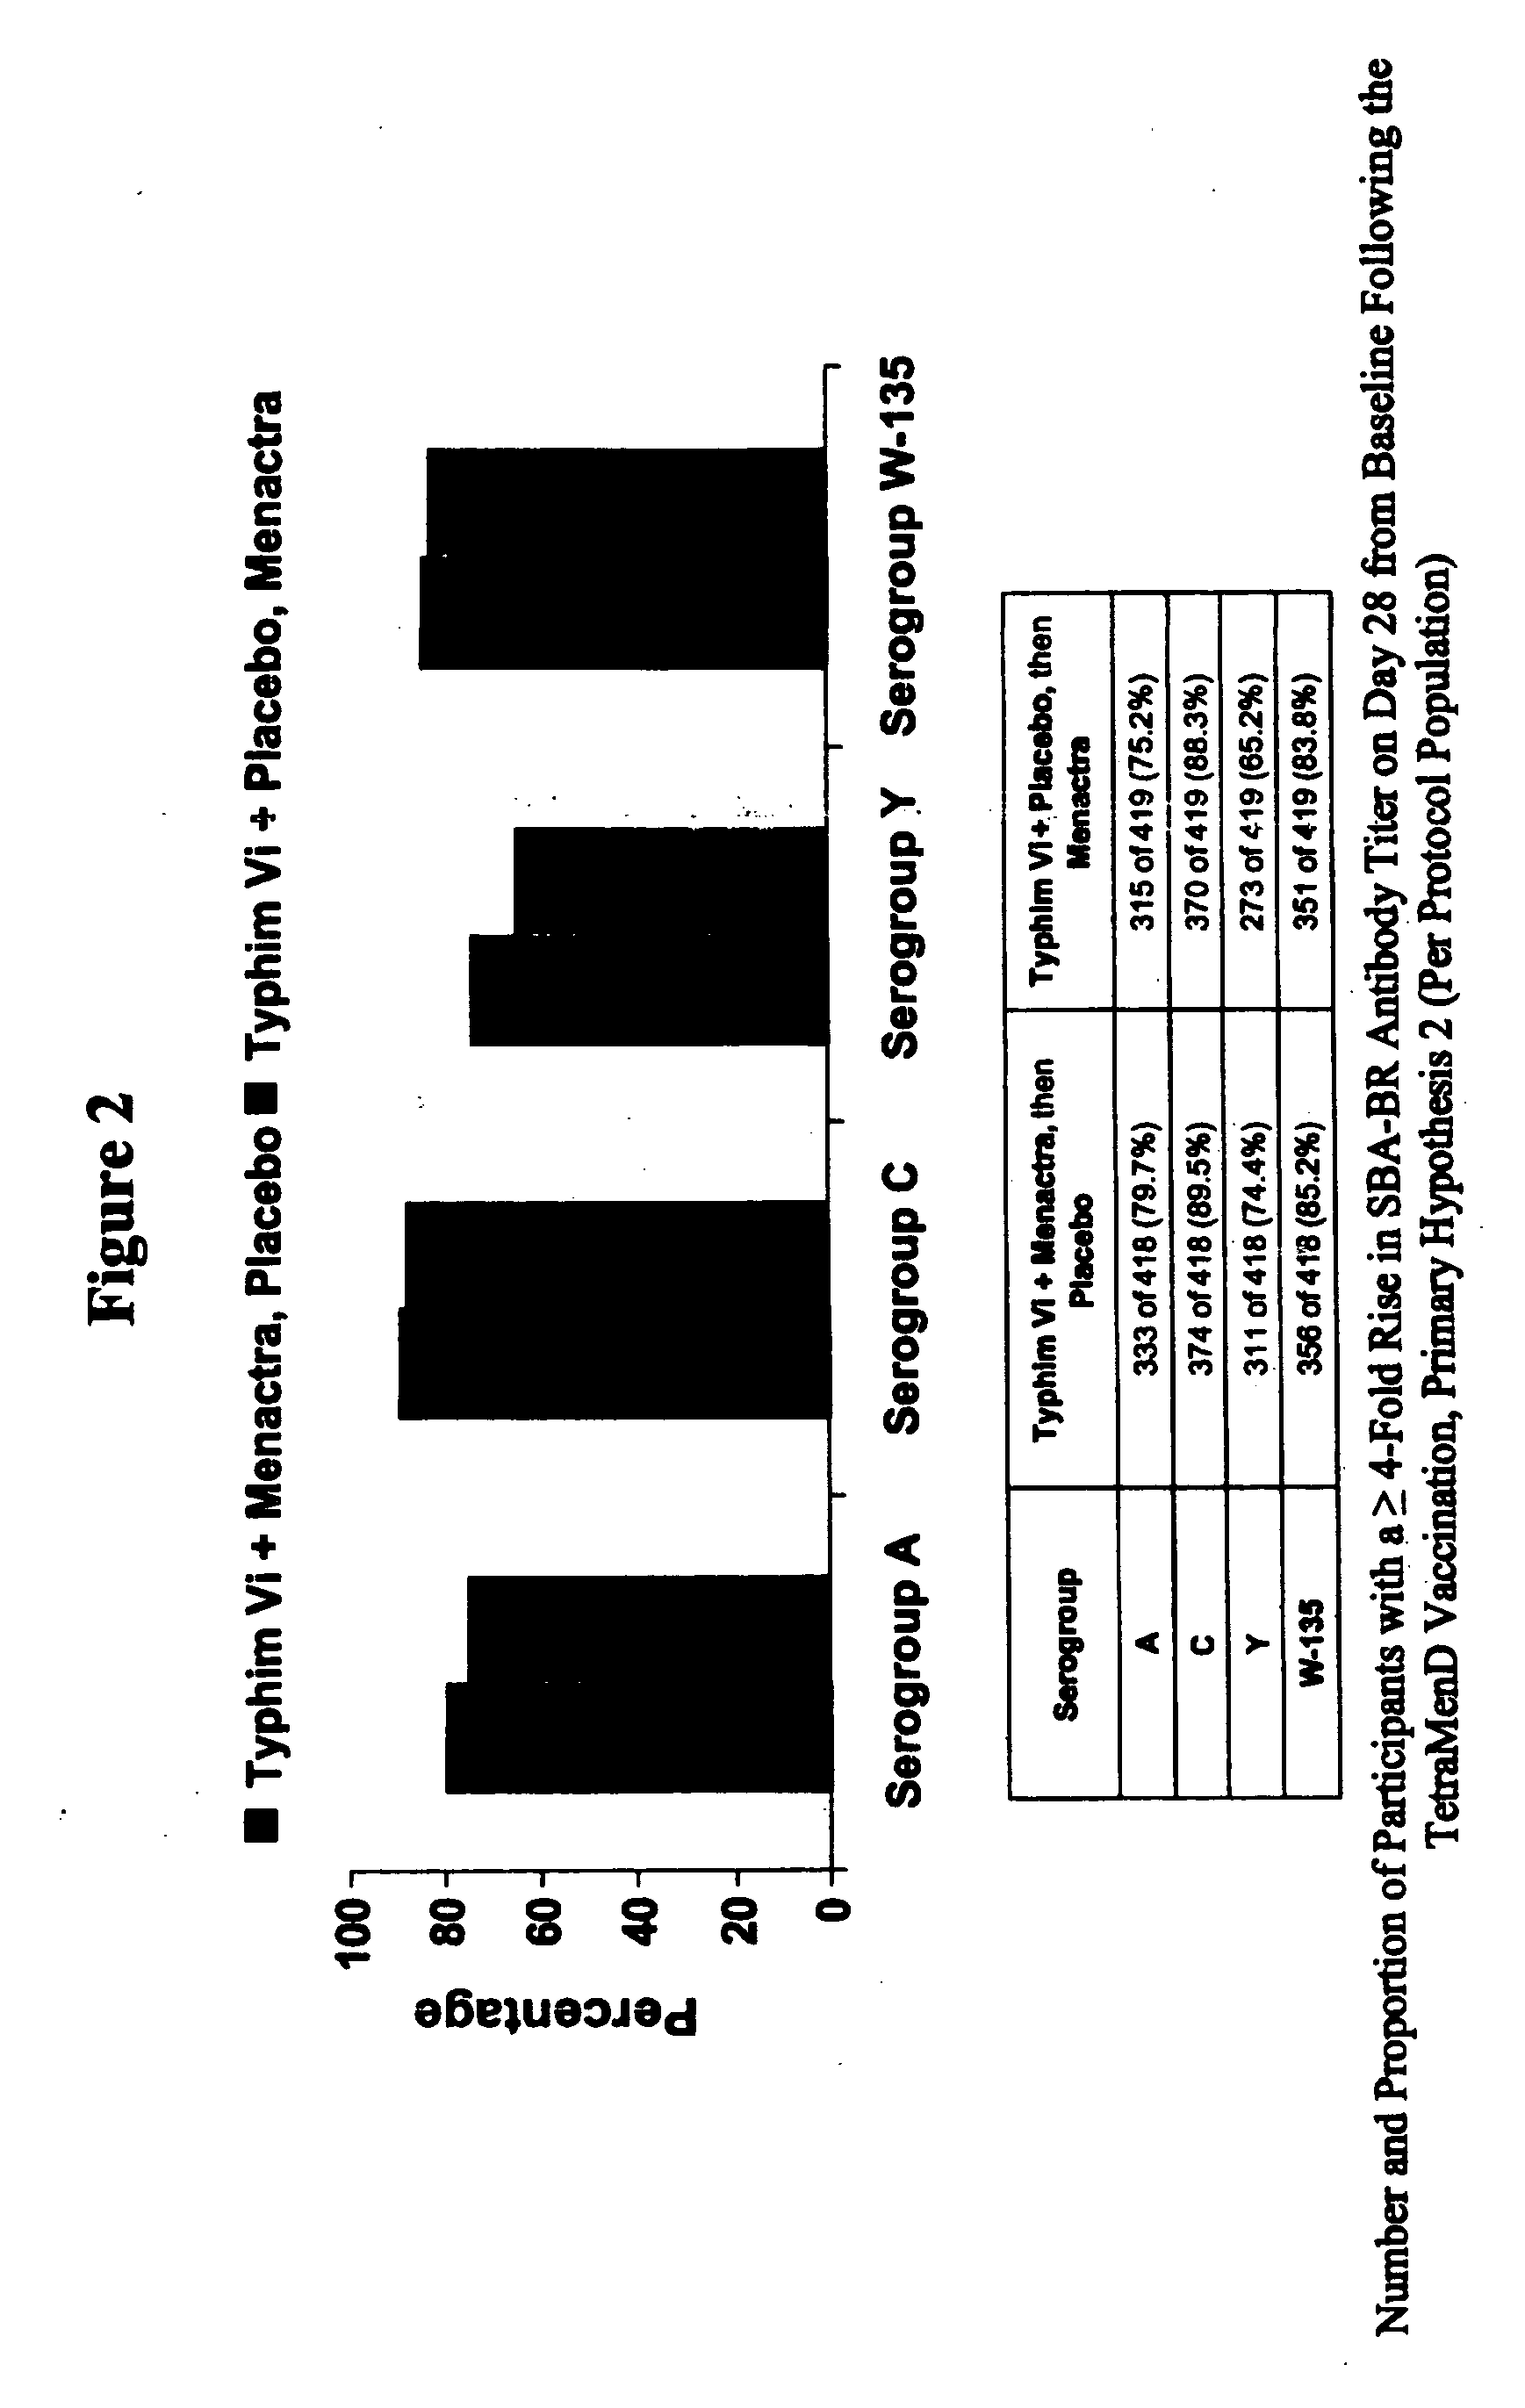 Multivalent meningococcal derivatized polysaccharide-protein conjugates and vaccine